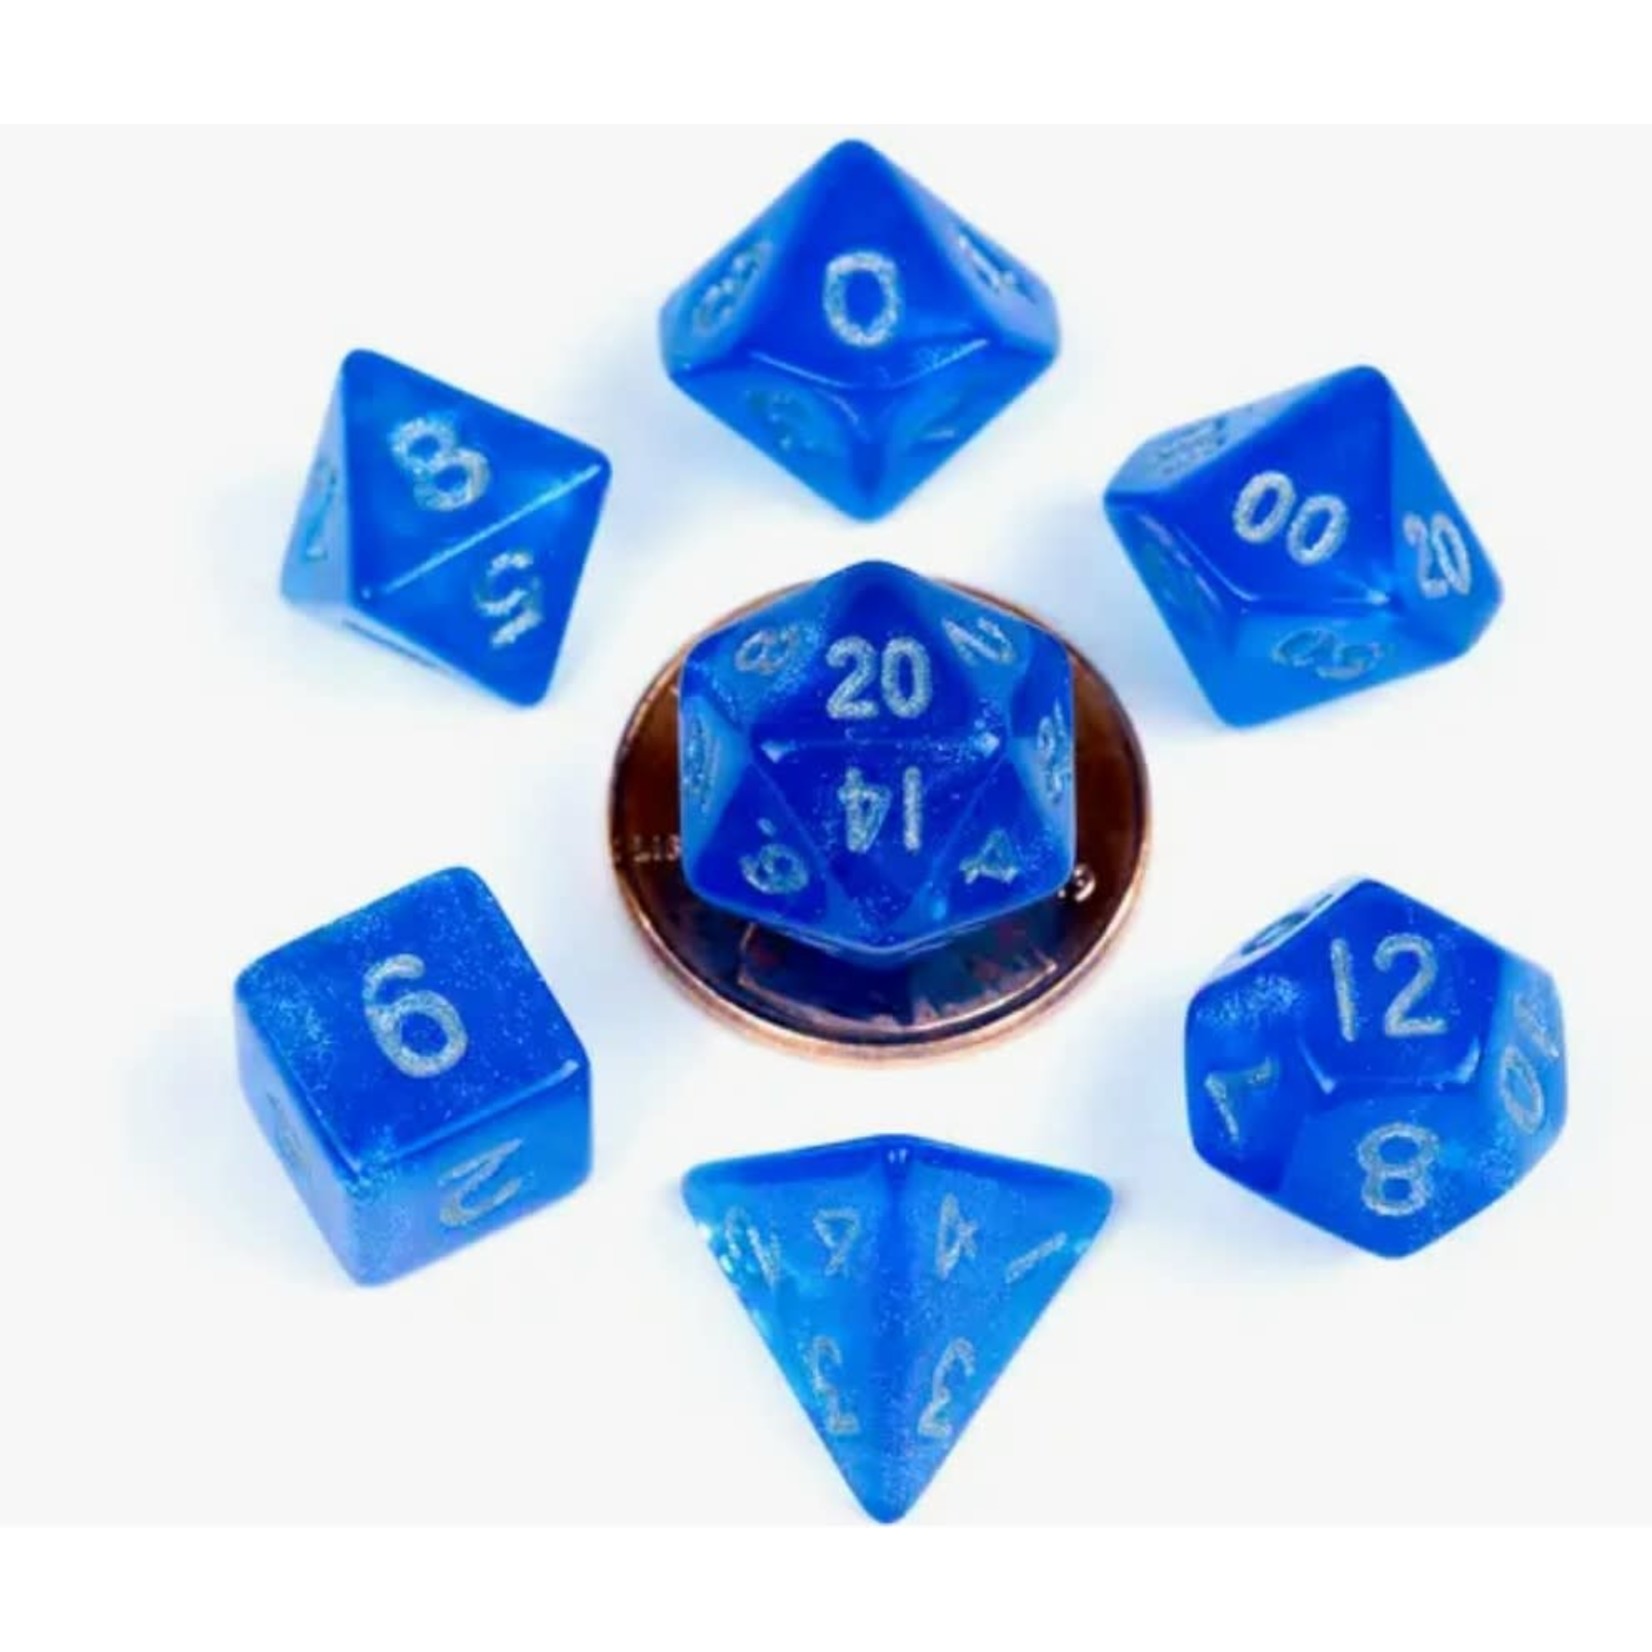 Metallic Dice Games 10mm Mini Acrylic Polyhedral Dice Set in Tube